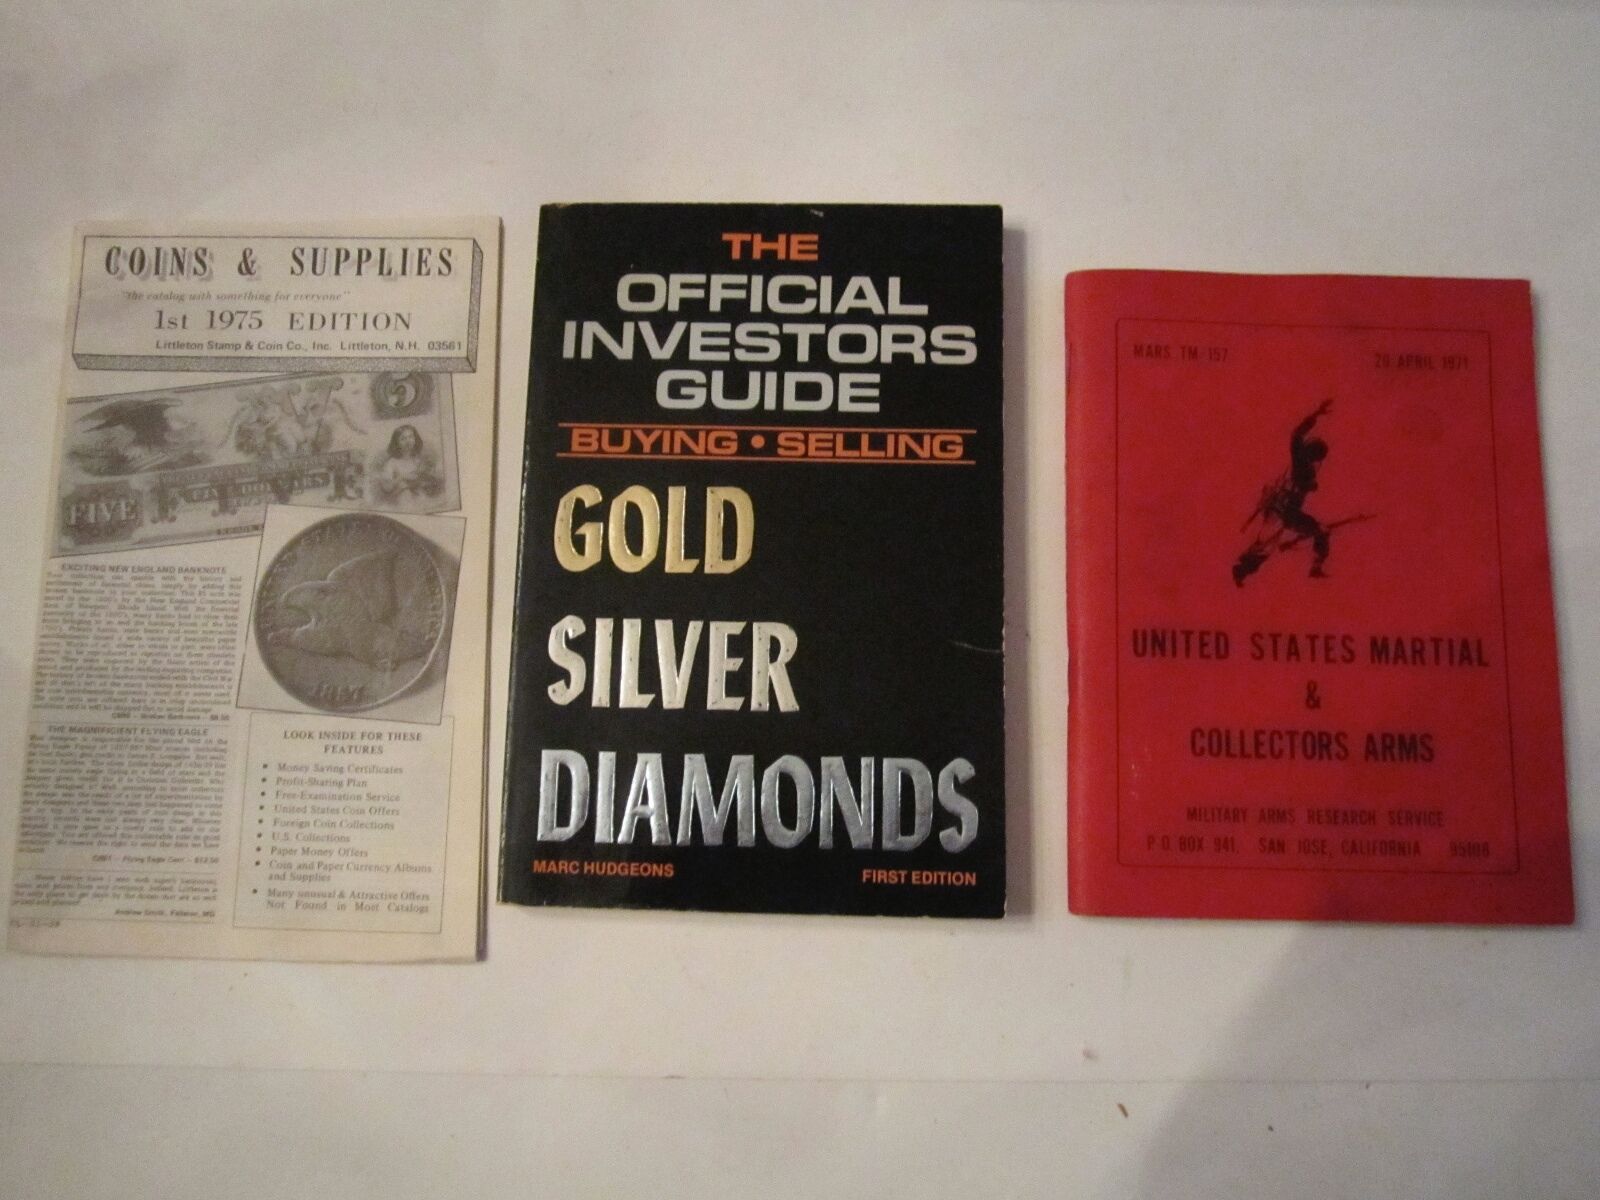 1971 U.S. MARTIAL & COLLECTOR'S ARMS, 1975 COINS & SUPPLIES, 1985 GOLD BOOK BB-1